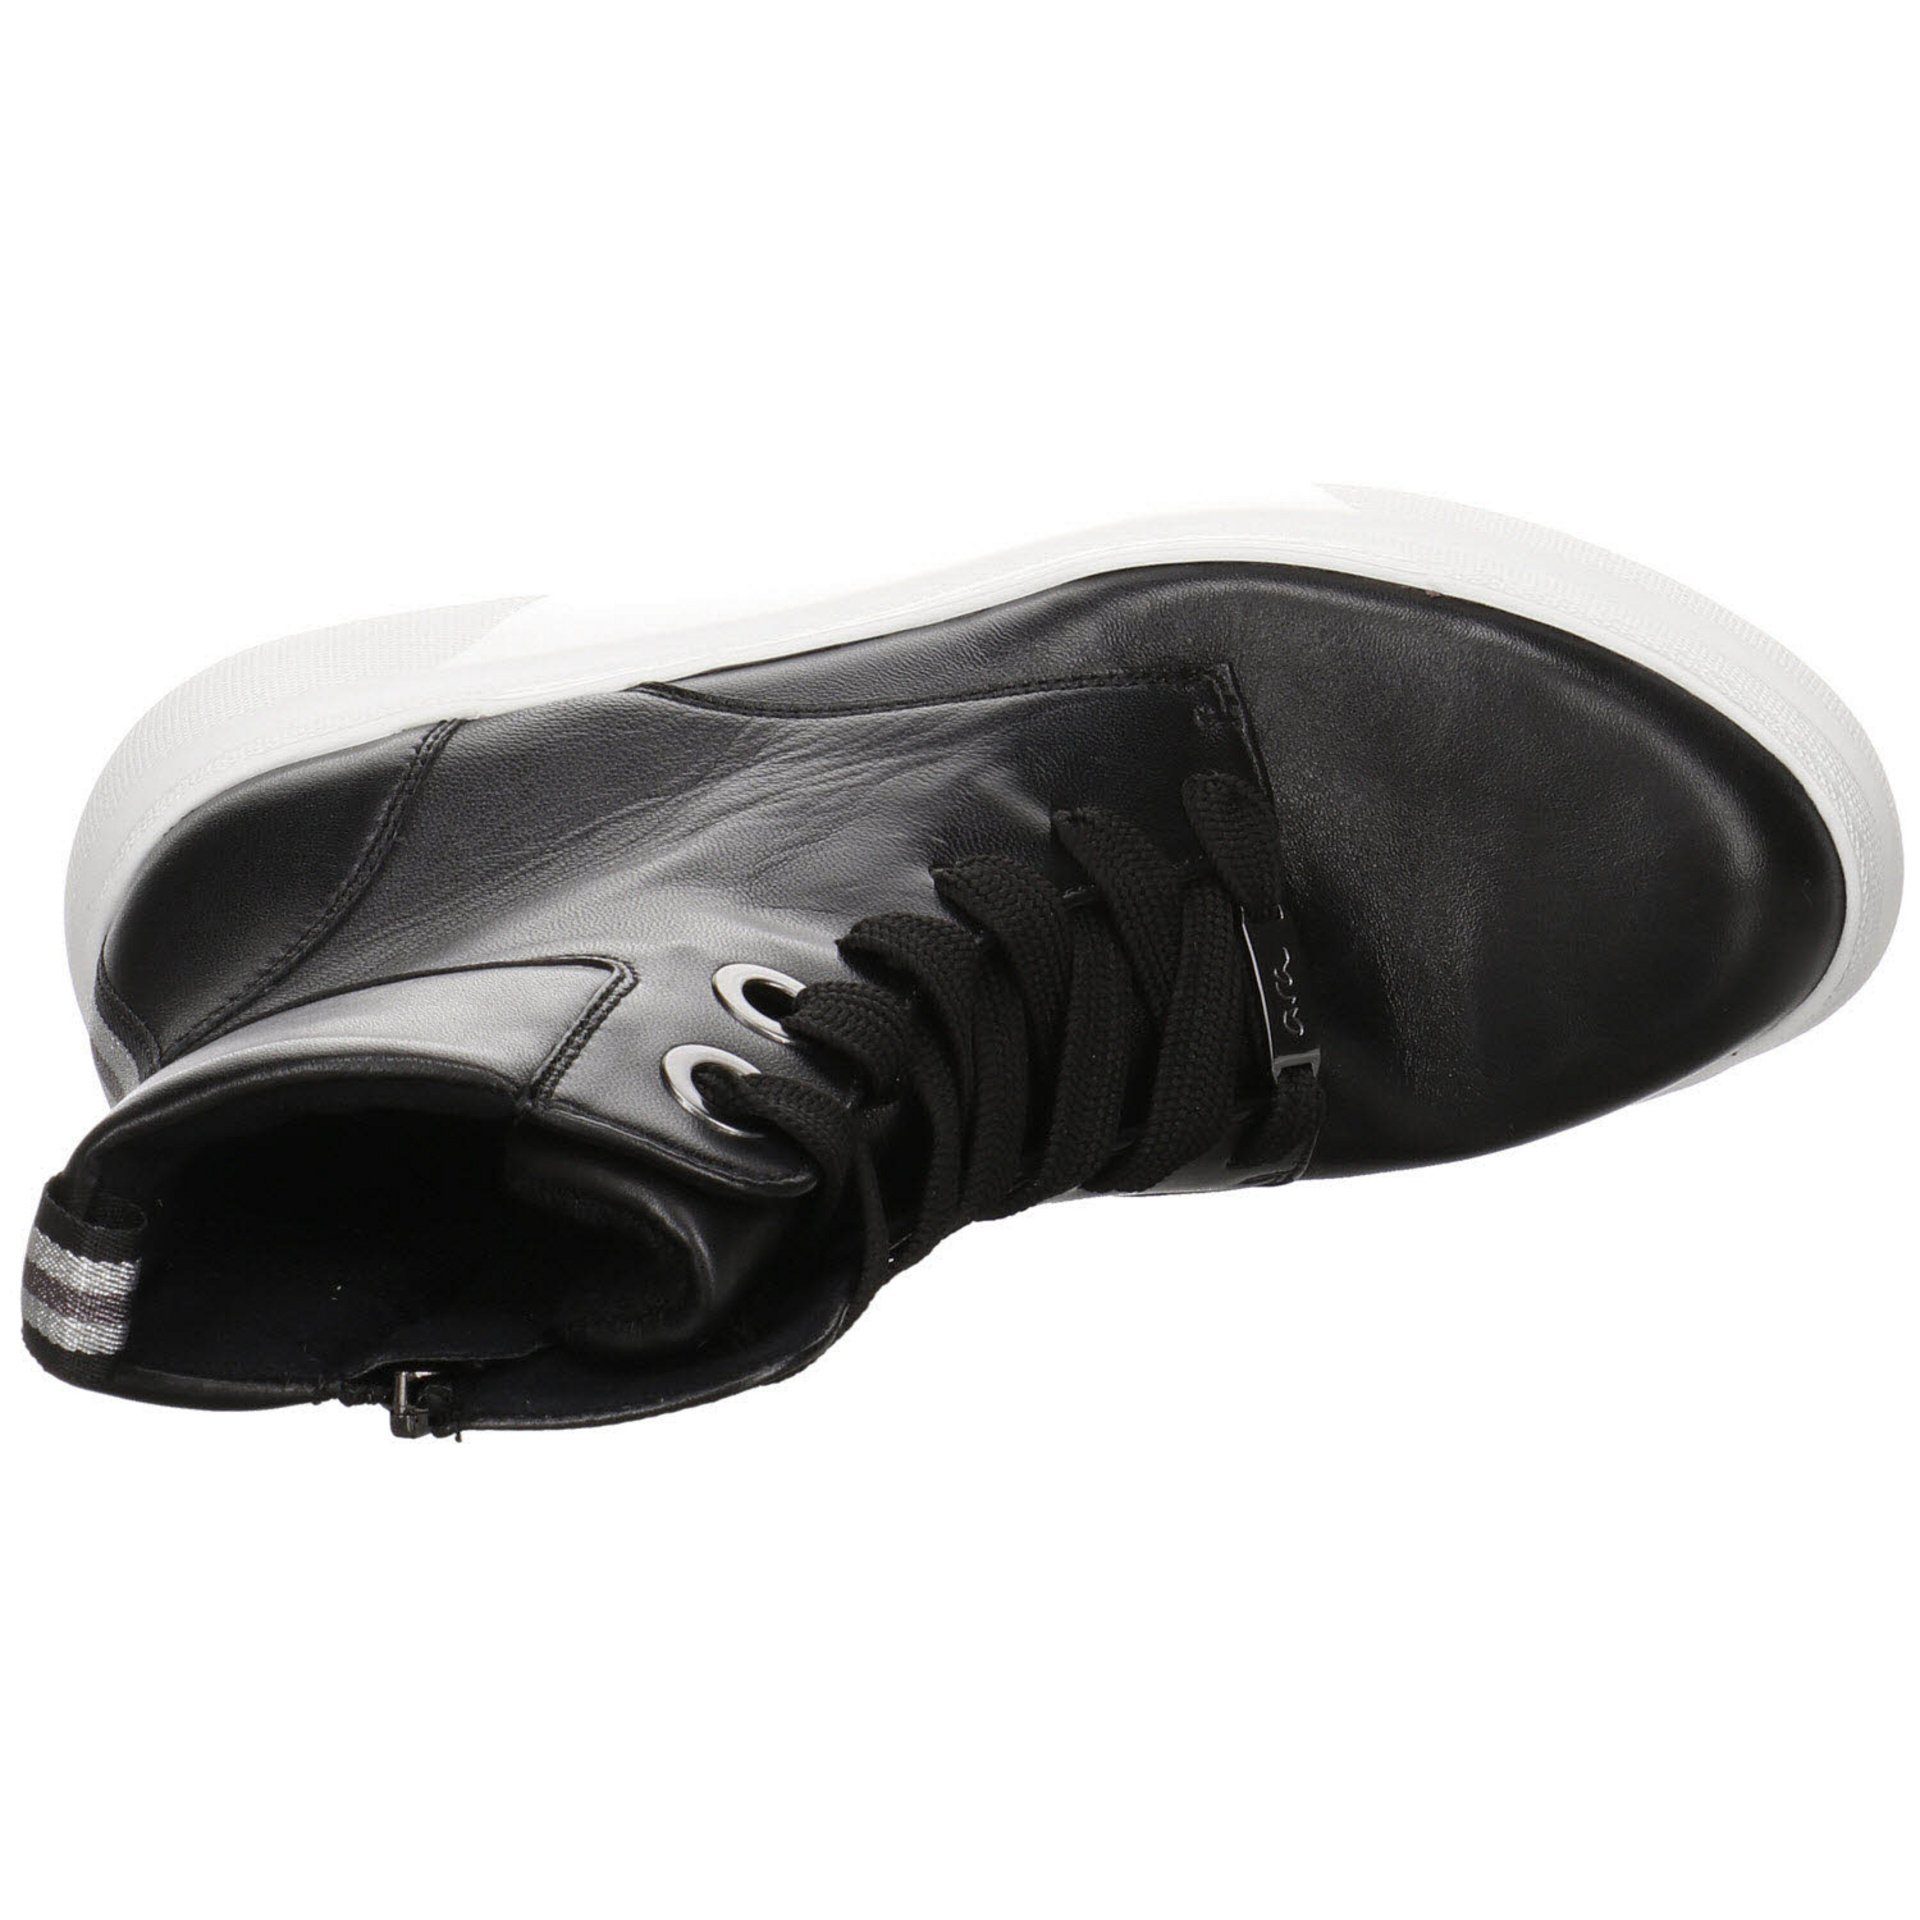 Stiefeletten dunkel Schnürstiefelette Textil Lausanne-Highsoft schwarz Damen Schuhe Ara